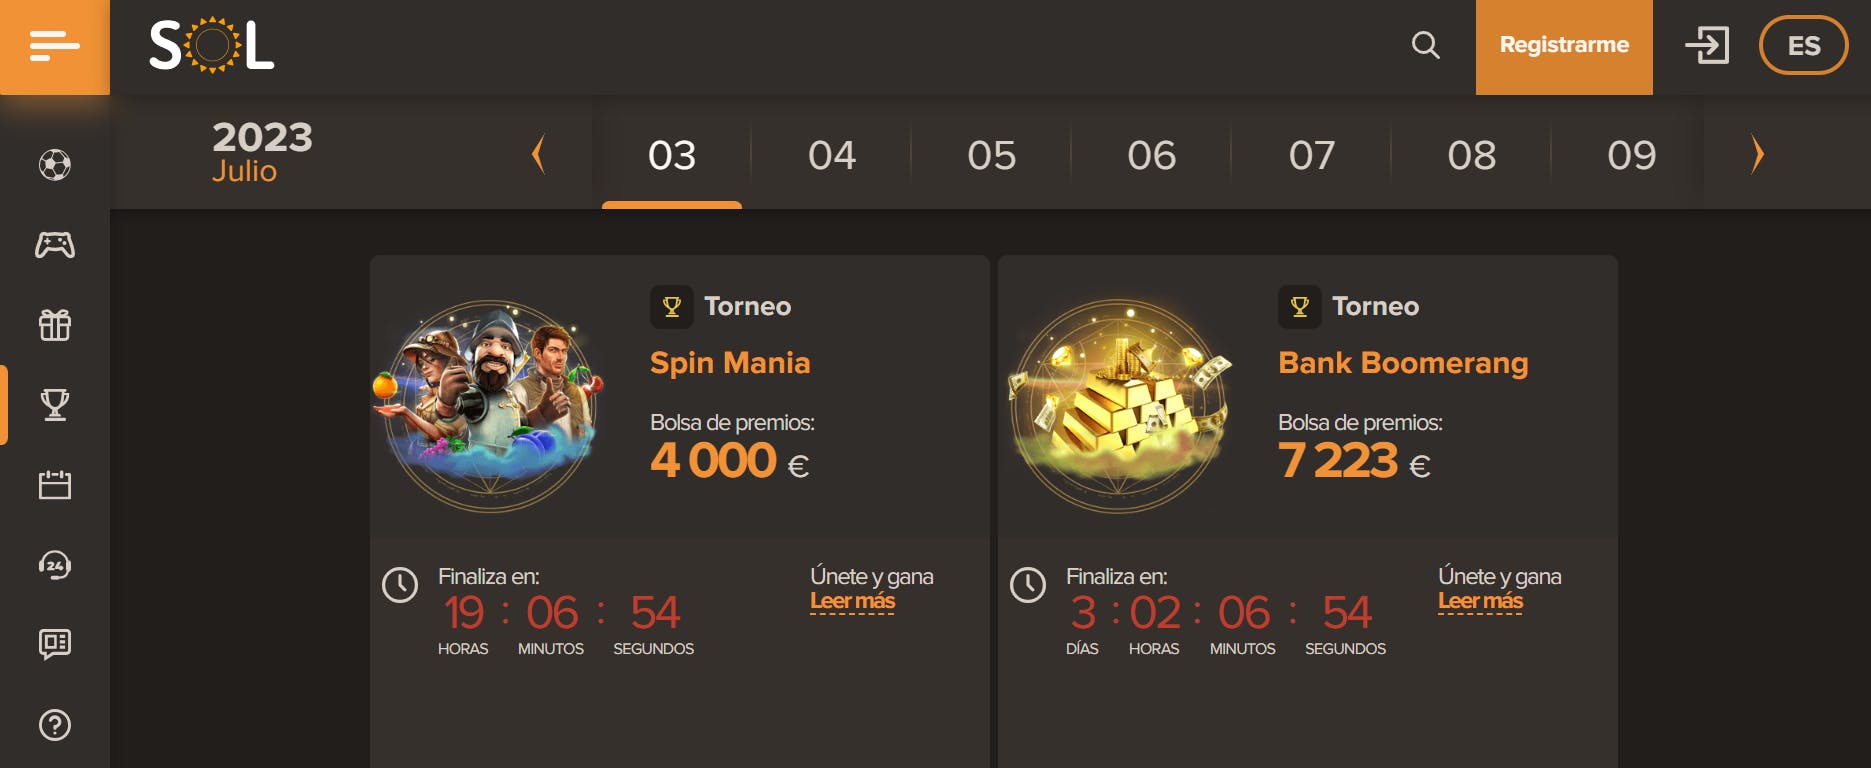 Sol Casino ofrece un gran calendario de torneos a jugadores peruanos